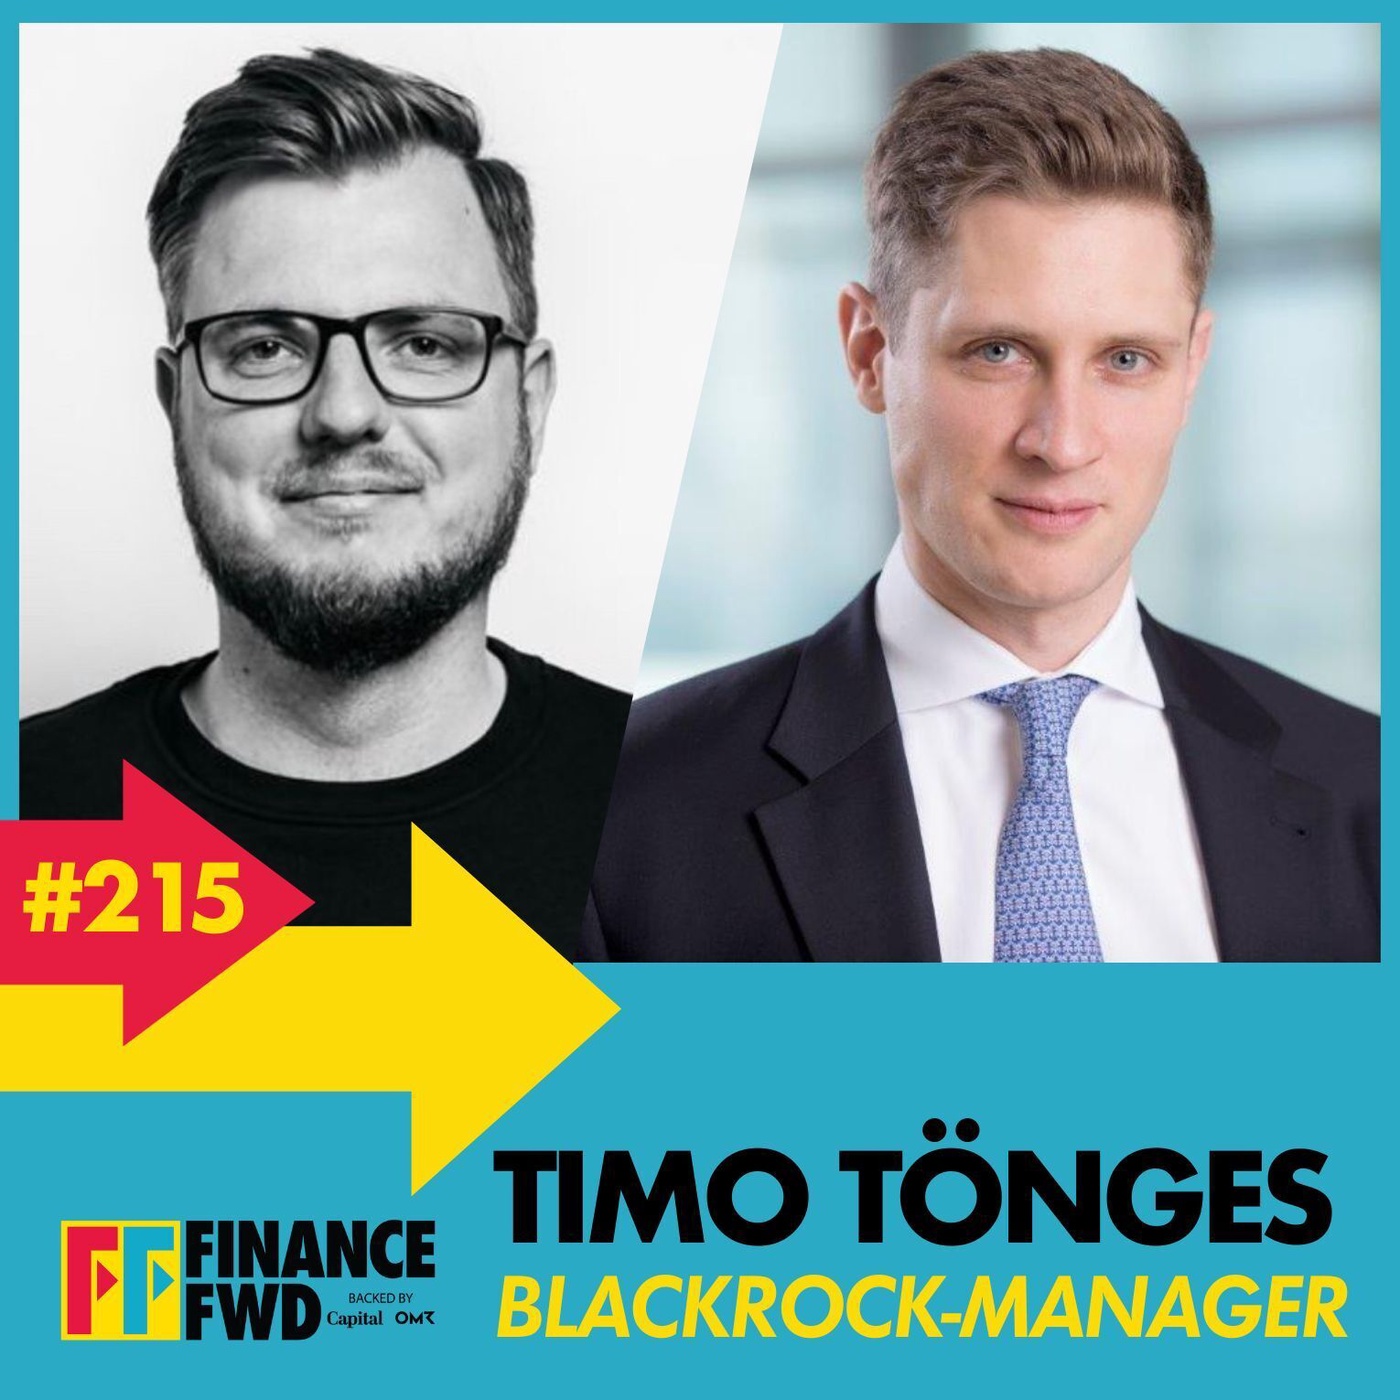 FinanceFWD #215 mit Blackrock-Manager Timo Tönges